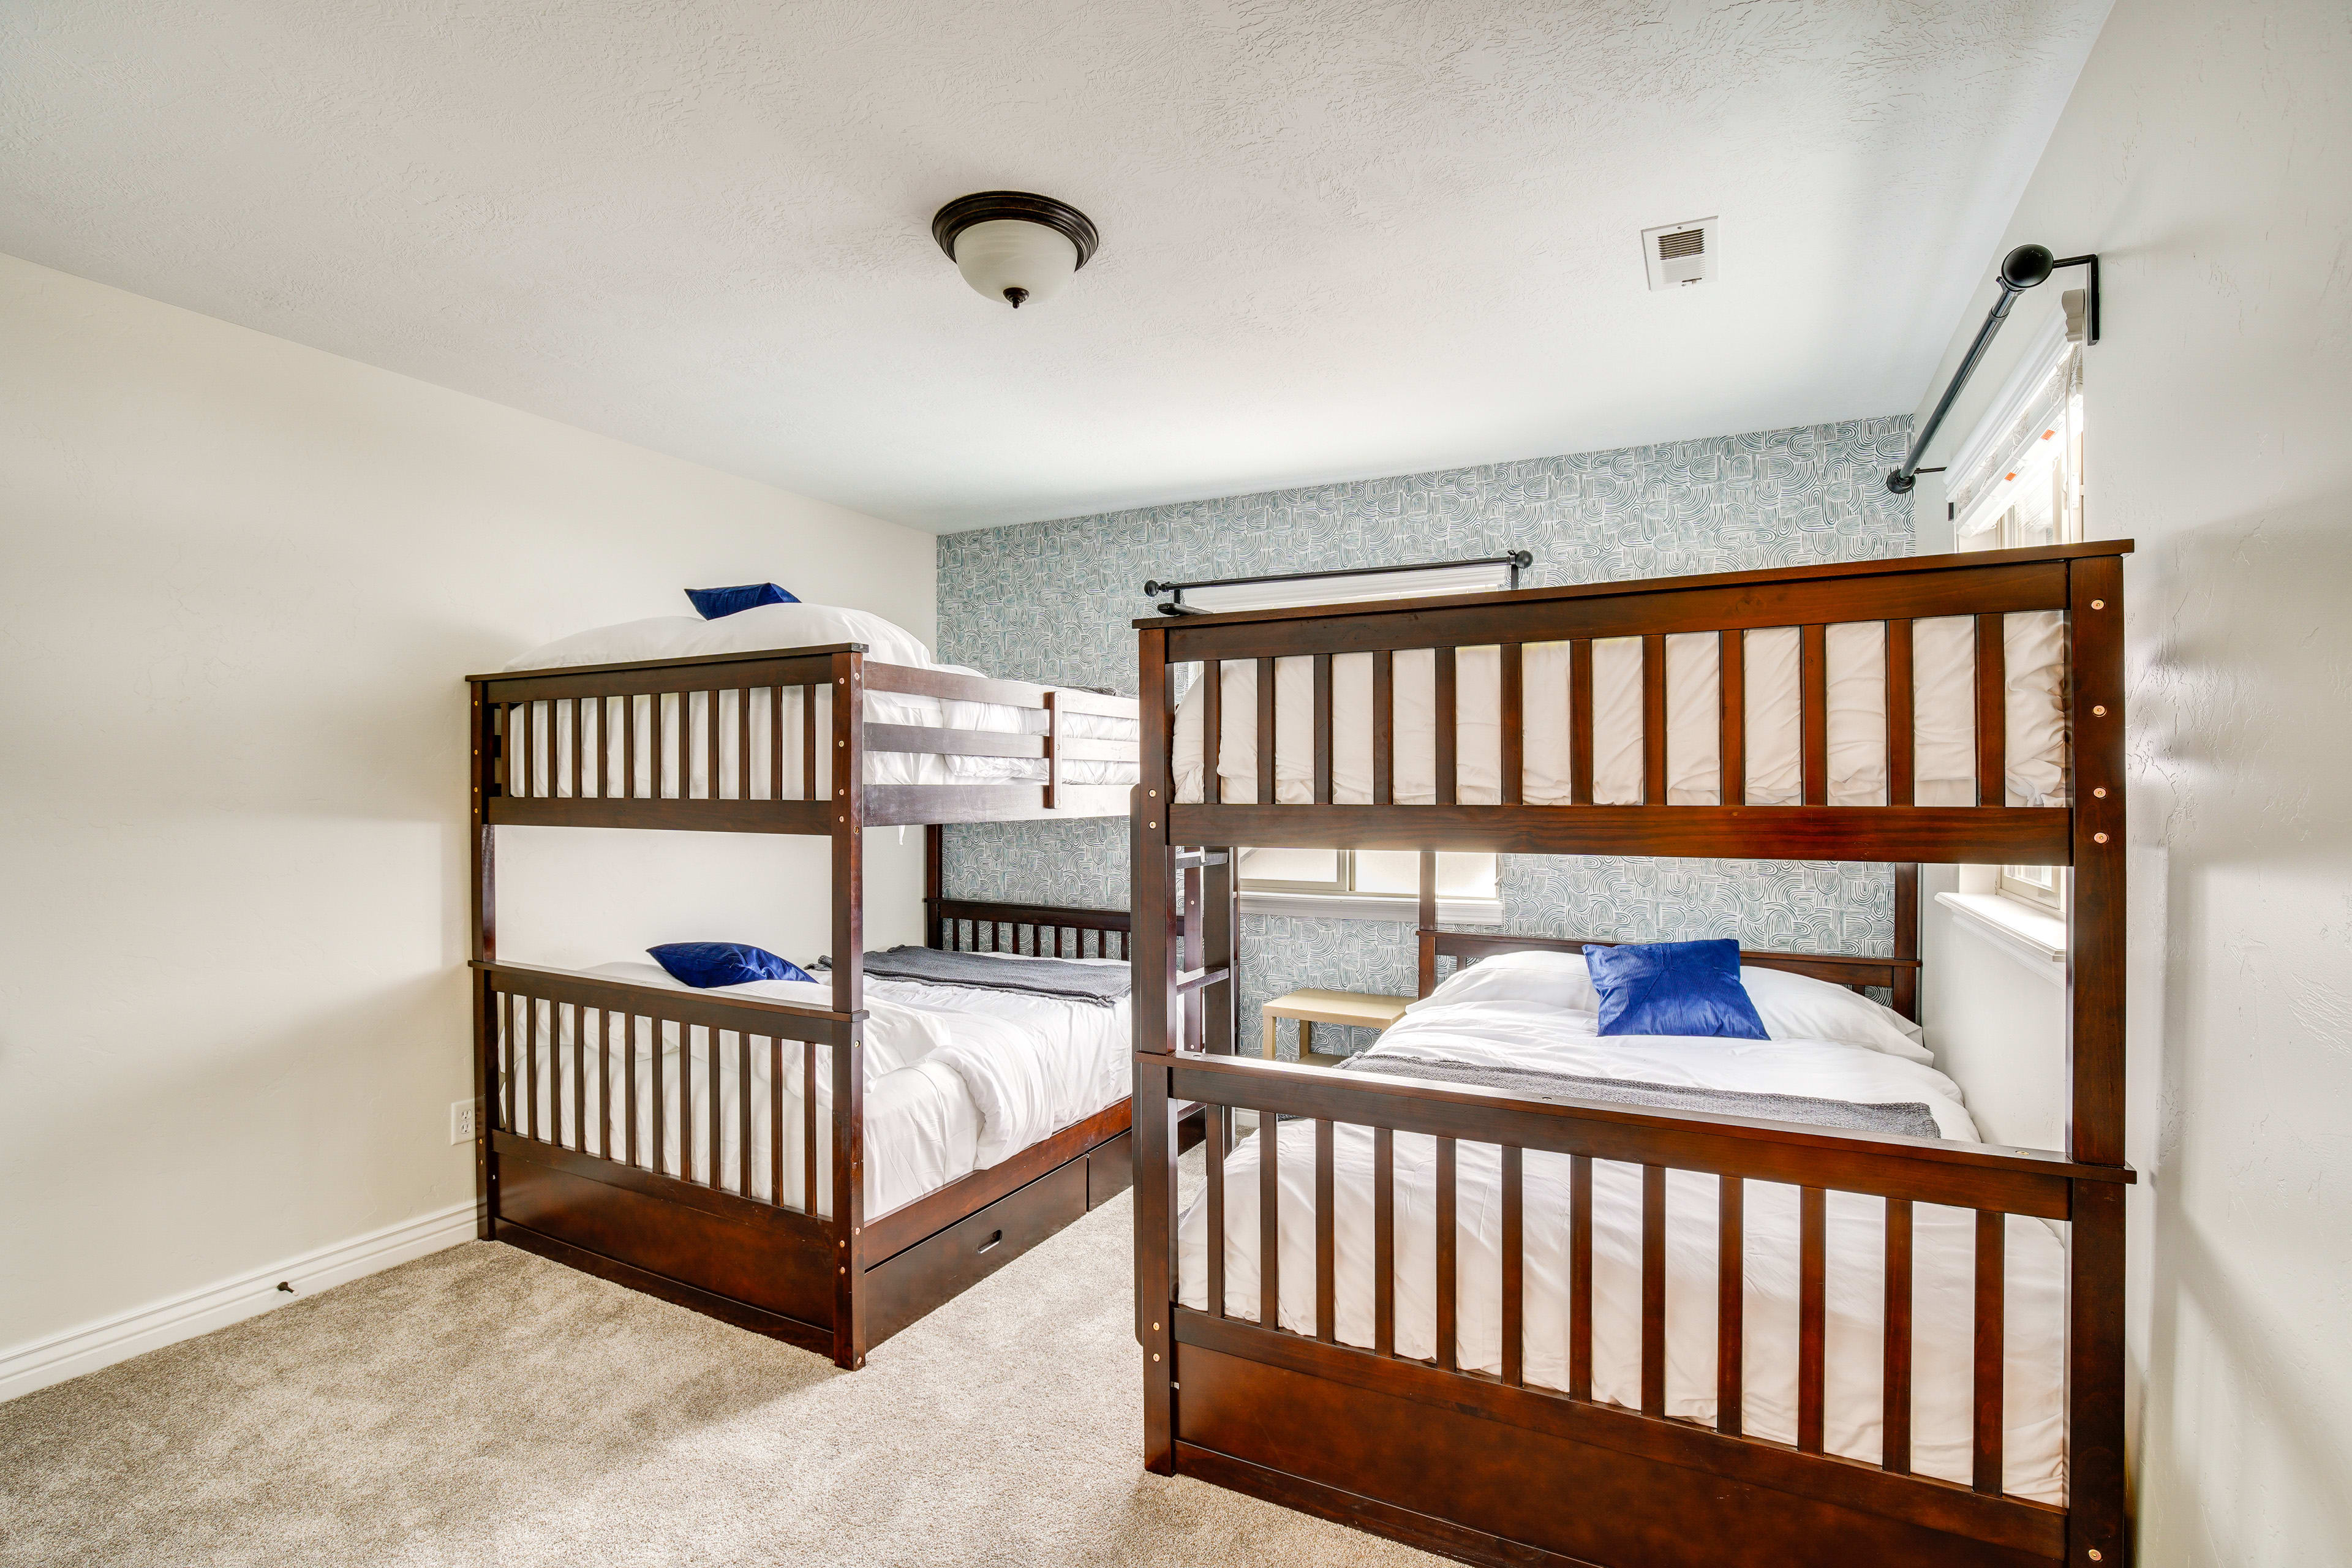 Bedroom 5 | 2 Full Bunk Beds